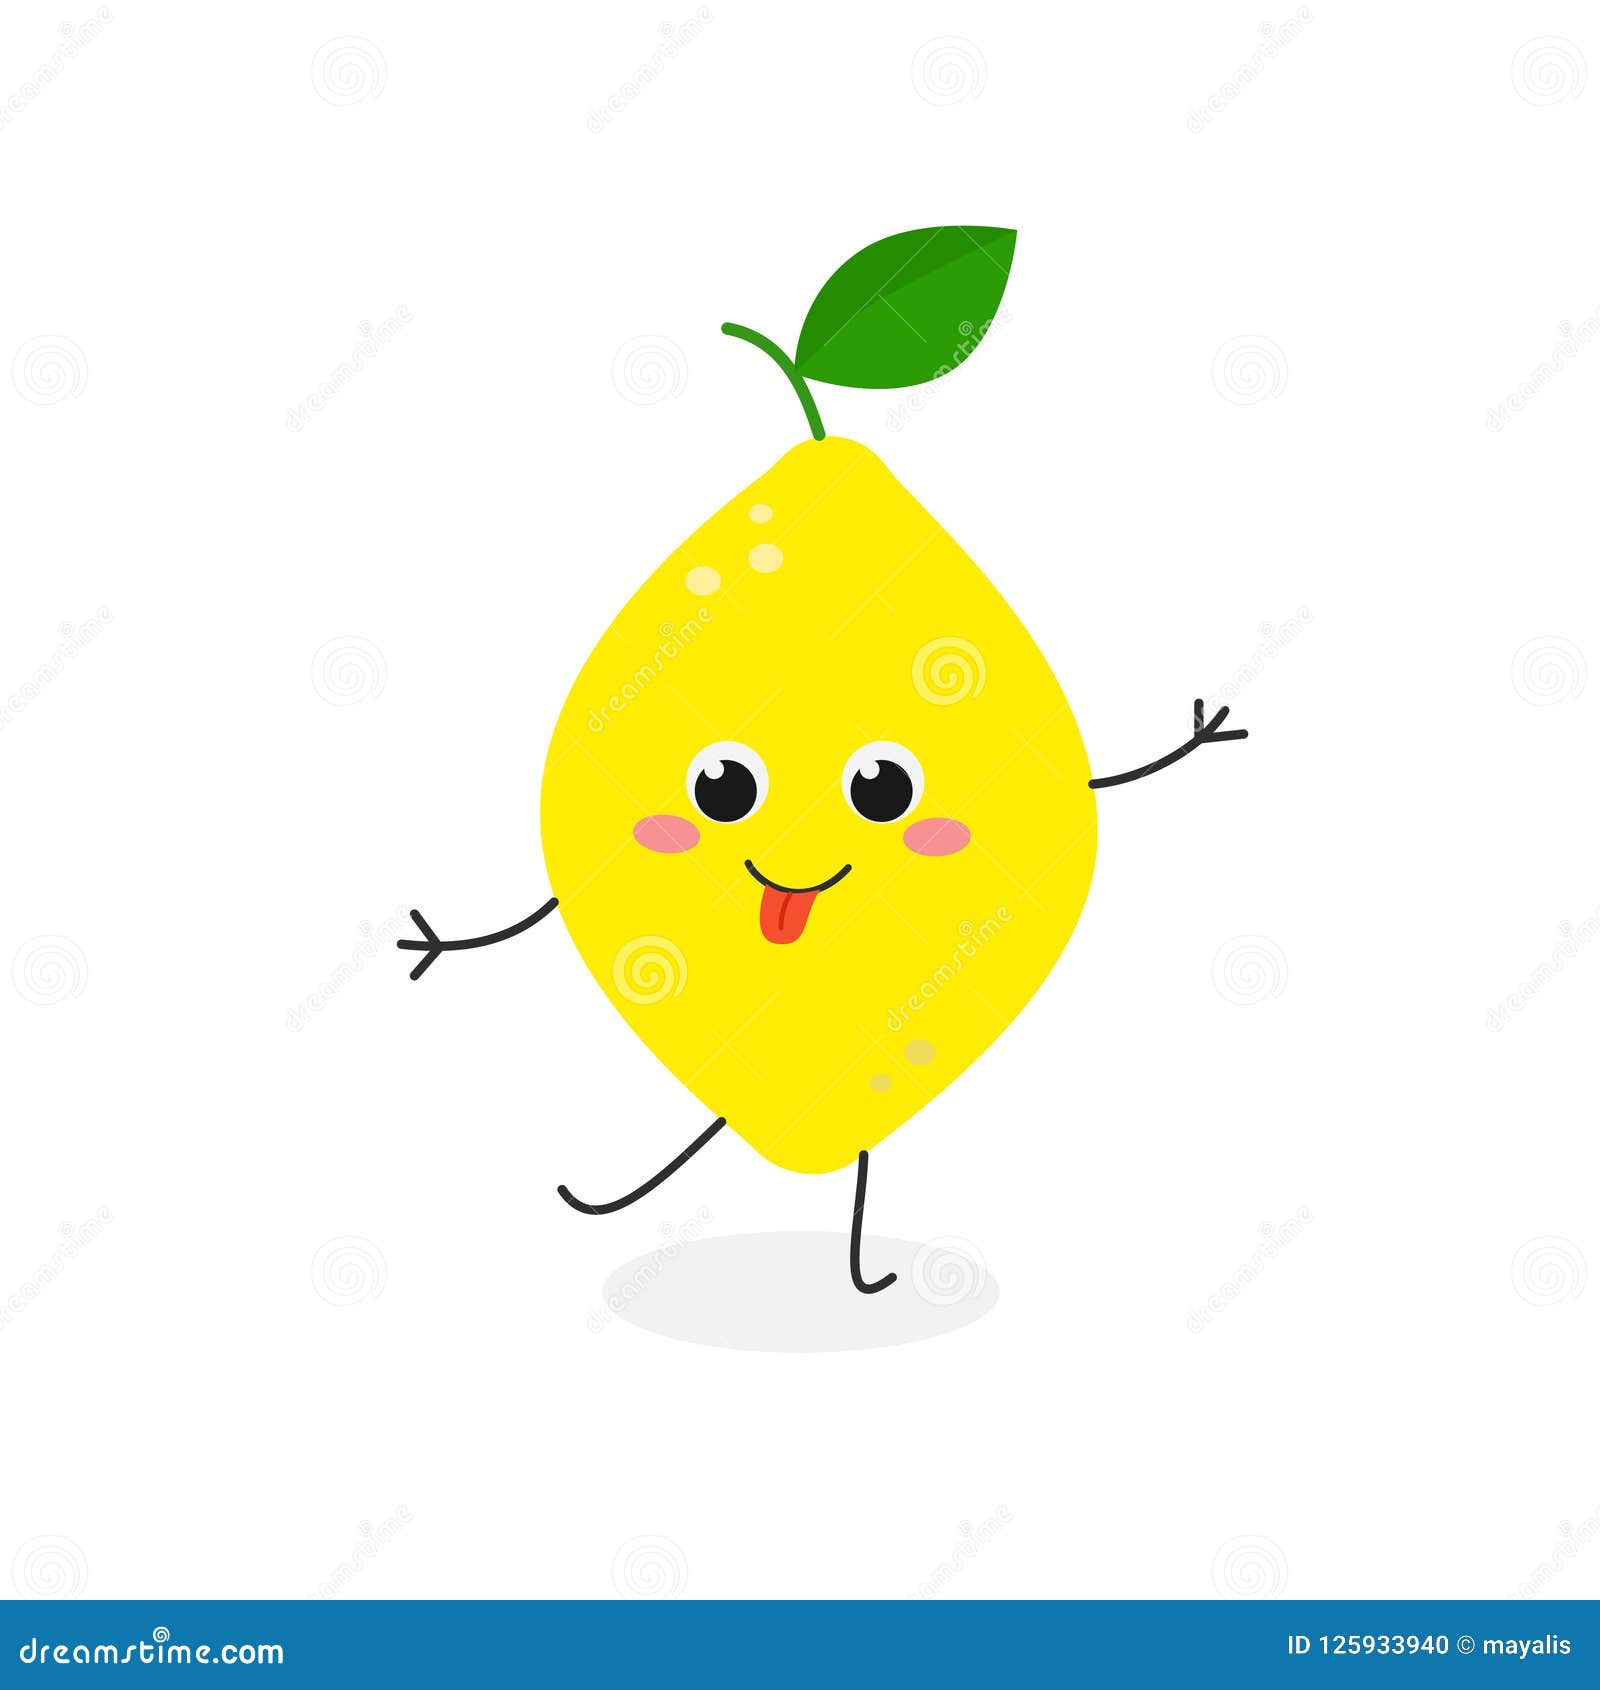 Vector Illustration of Funny Cartoon Lemon Stock Vector - Illustration ...